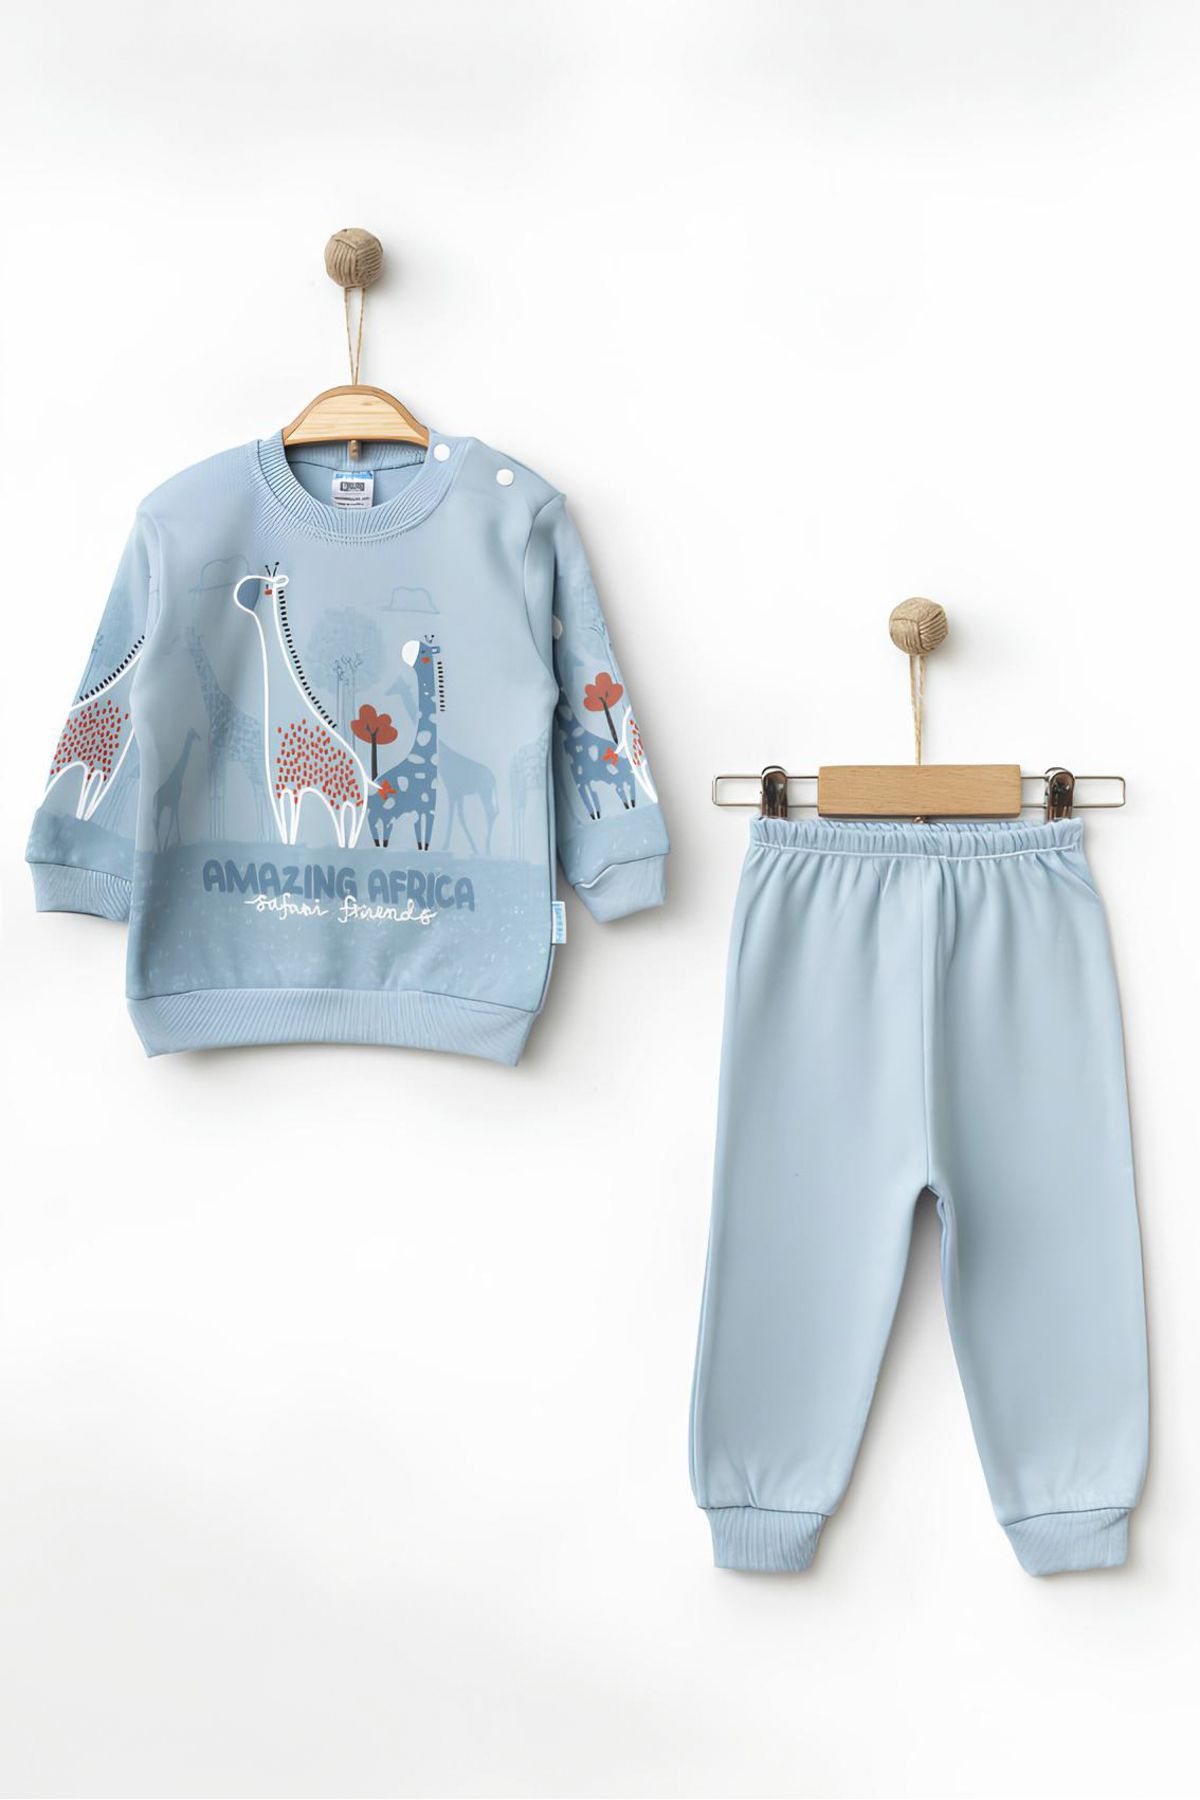 Rise Raba Bebek Pamuklu Baskılı 2'li Pijama Takımı 9-18 Aylık